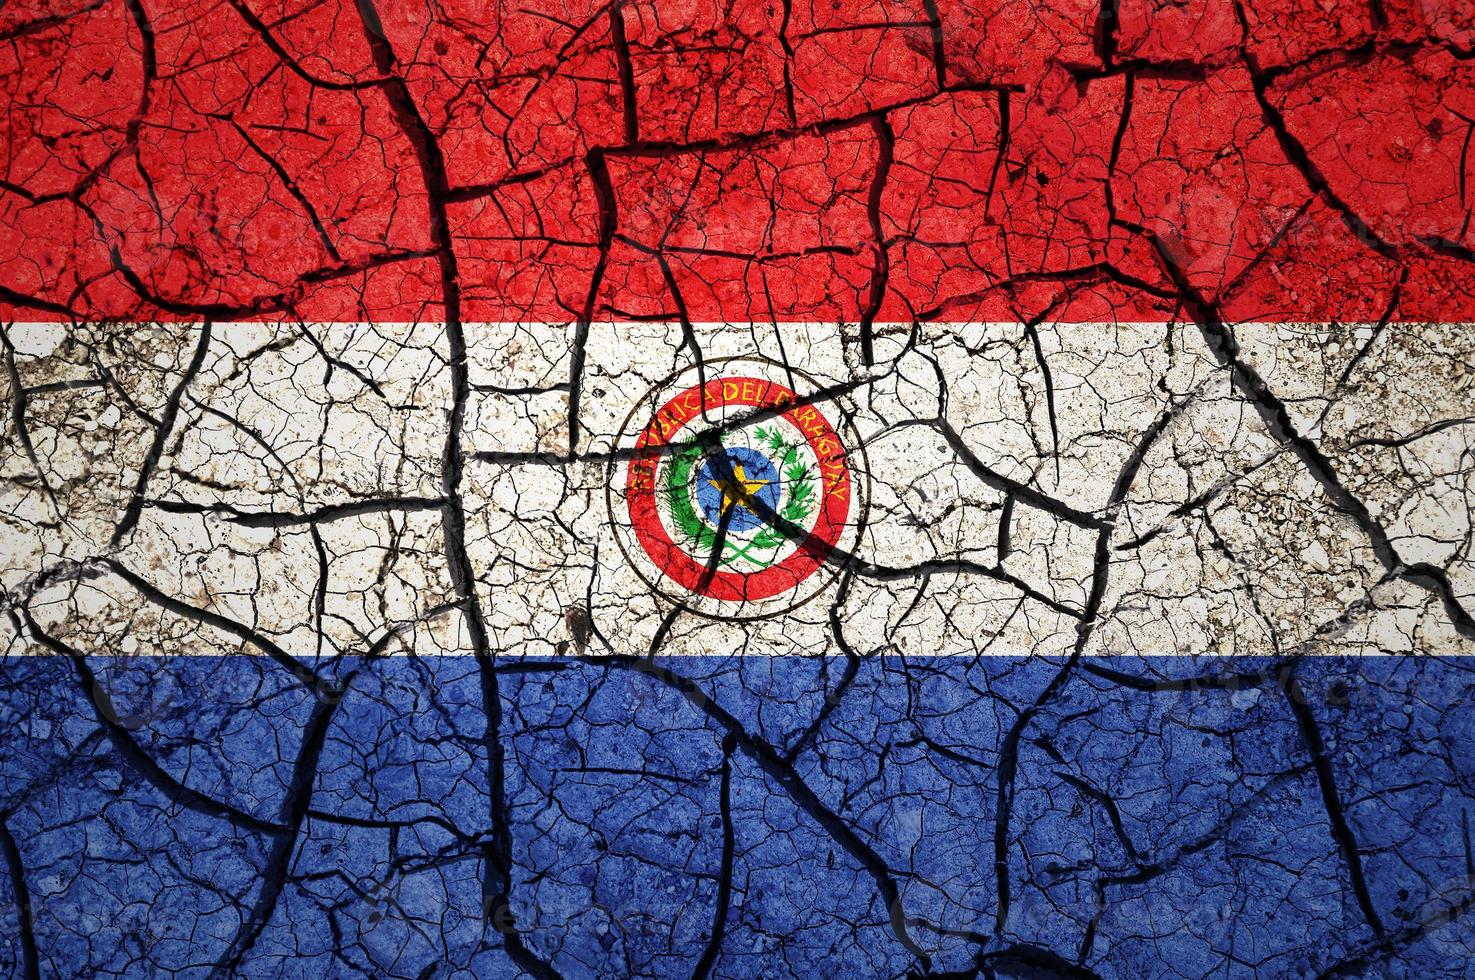 trockenes bodenmuster auf der flagge von paraguay. land mit dürrekonzept. Wasserproblem. Land der trockenen, rissigen Erde. foto